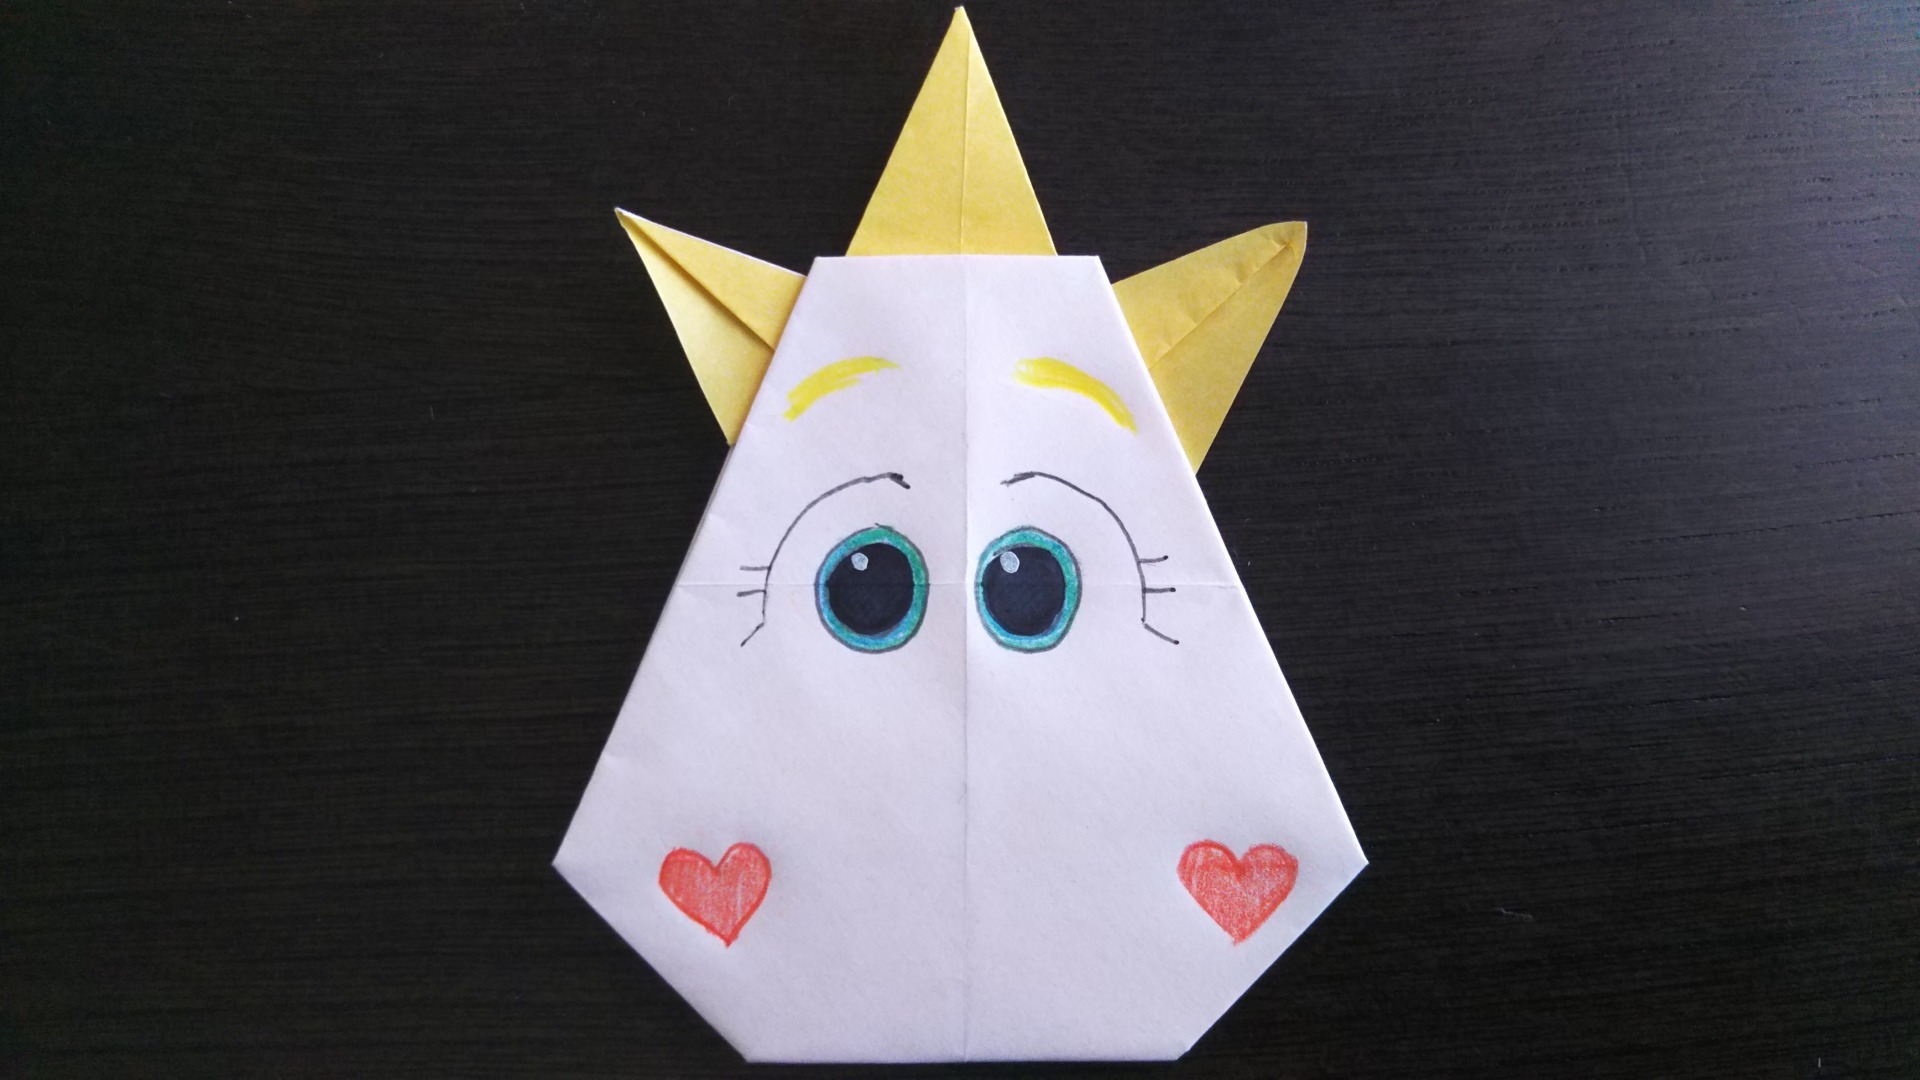 ツムツム 折り紙 折り 方 かわいい顔に癒される 簡単折り紙で作る ディズニーツムツムのプーさんを紹介